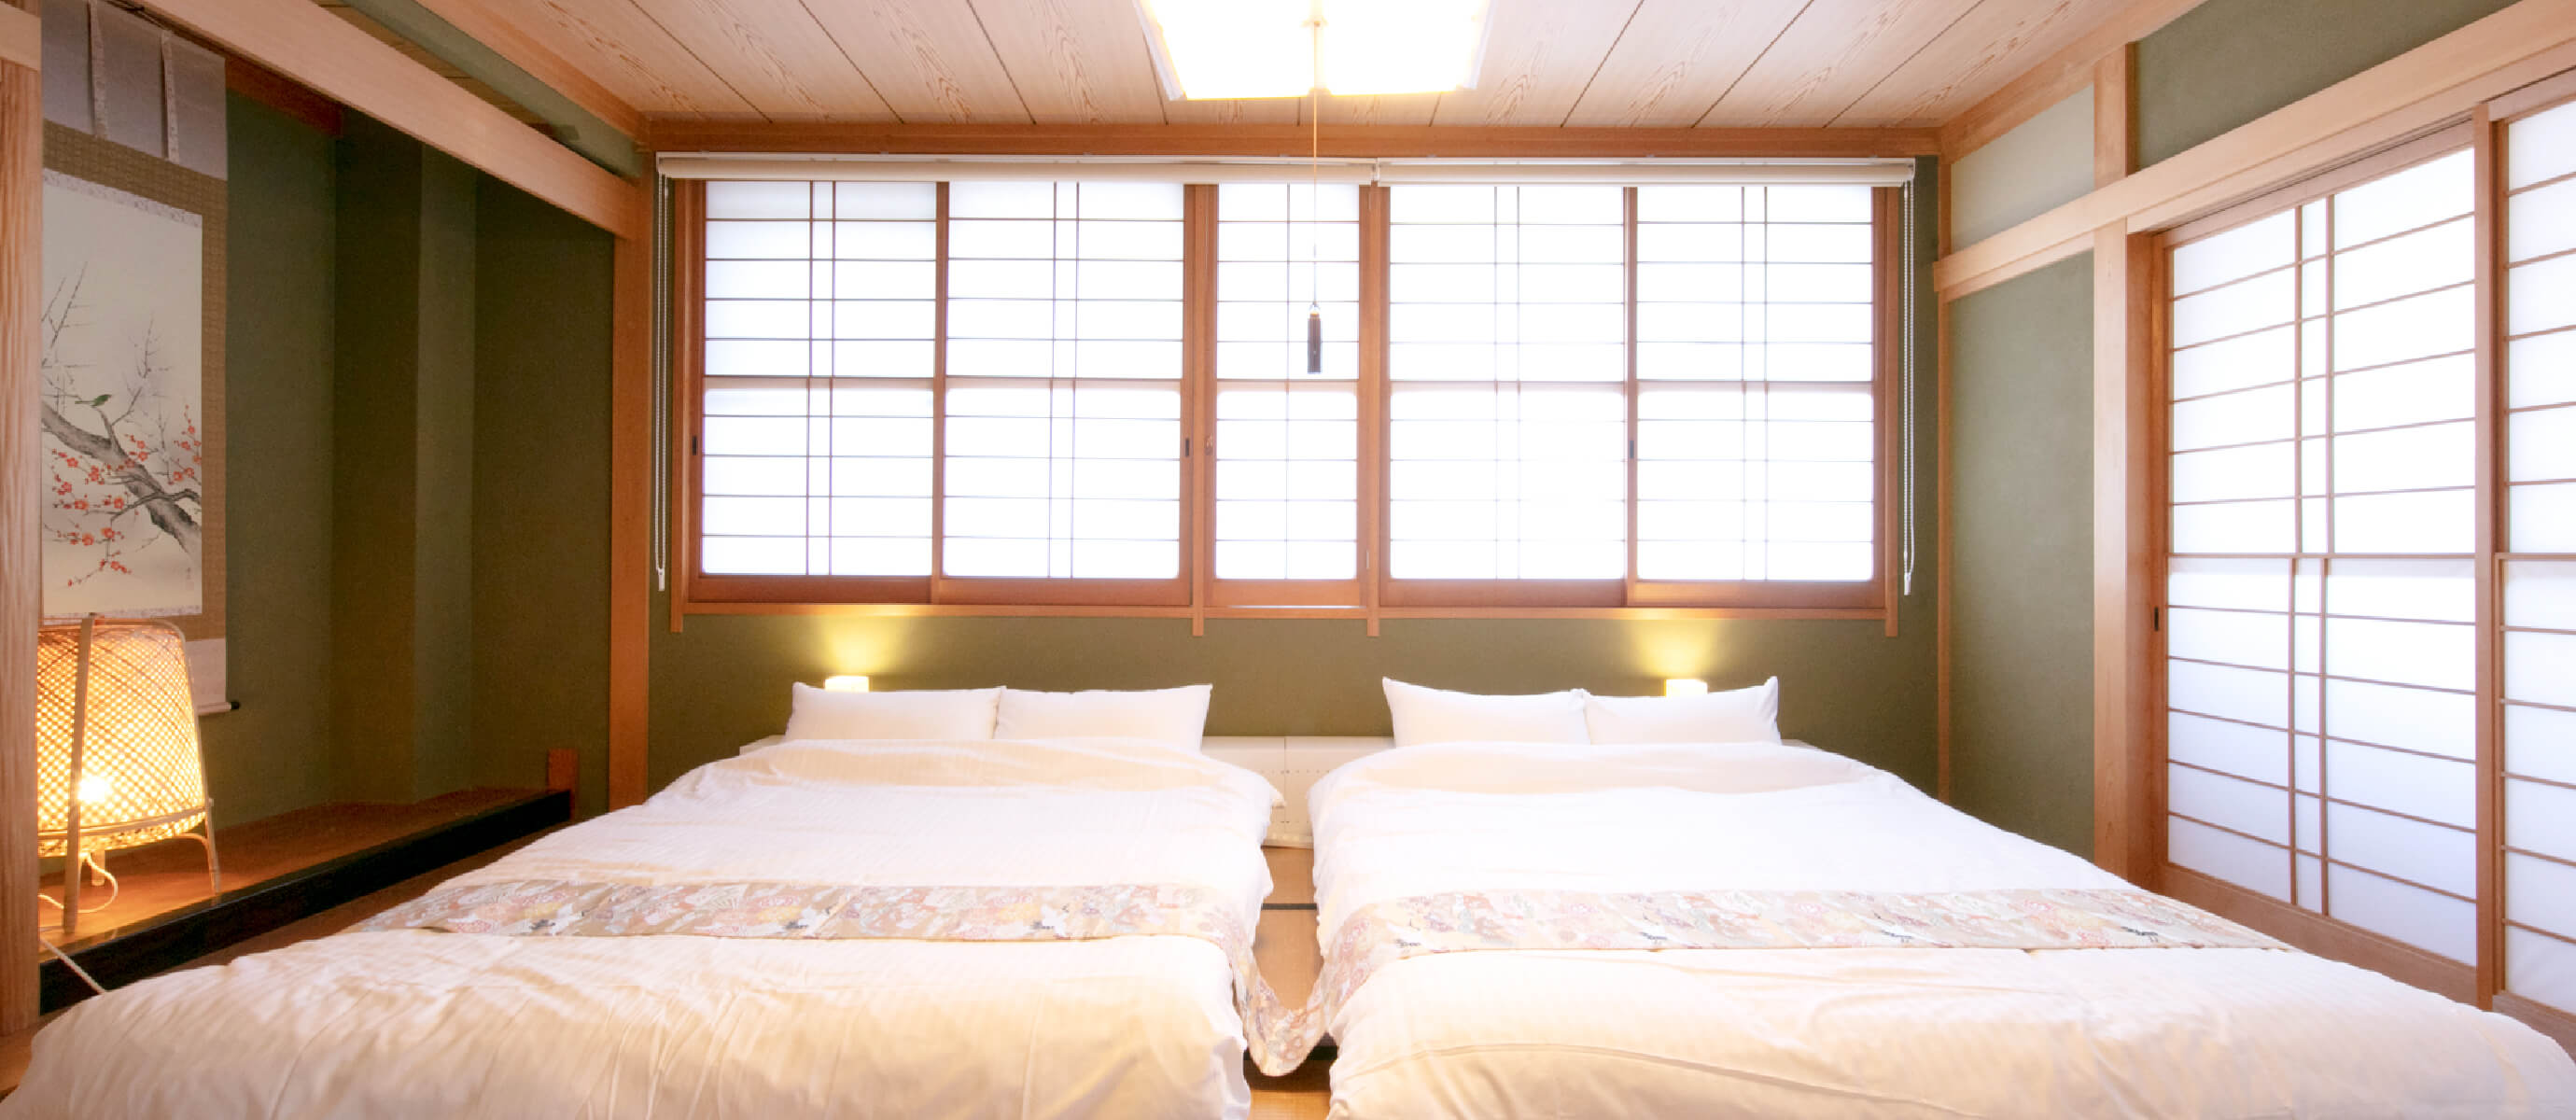 クイーンサイズのベッドが2つ、ダブルサイズのソファベッドが2つ、シングルサイズの布団が3セット、合計最大9名で宿泊可能です。